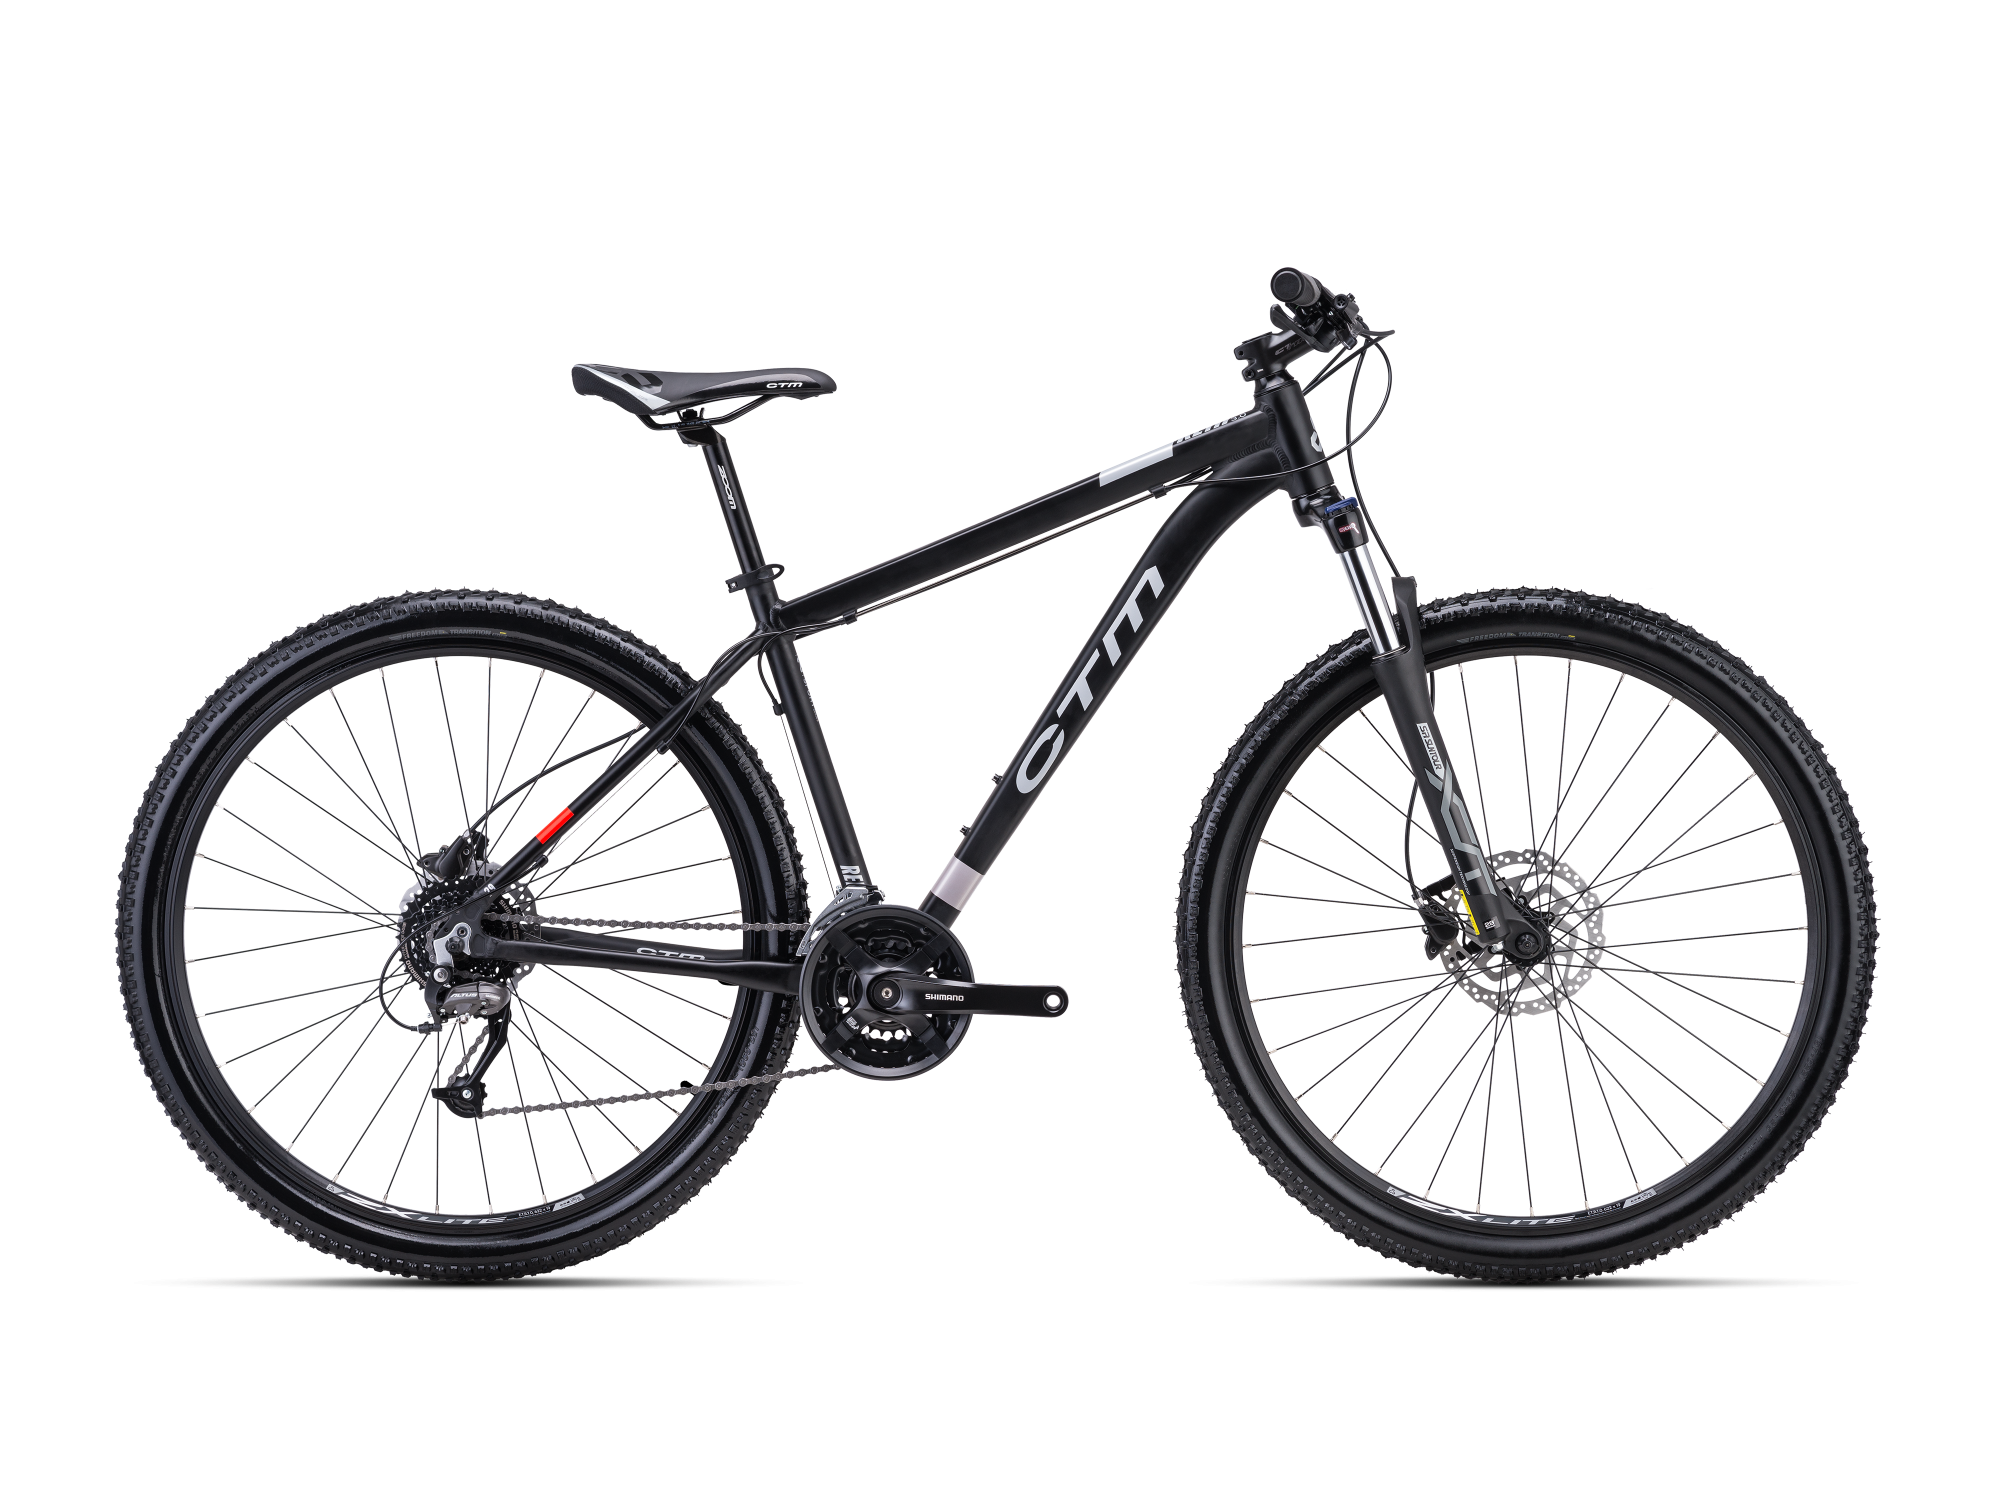 Brdski bicikl CTM Rein 3.0 crne boje namijenjen za vožnju prirodom, šumskim stazama, makadamom i cestom